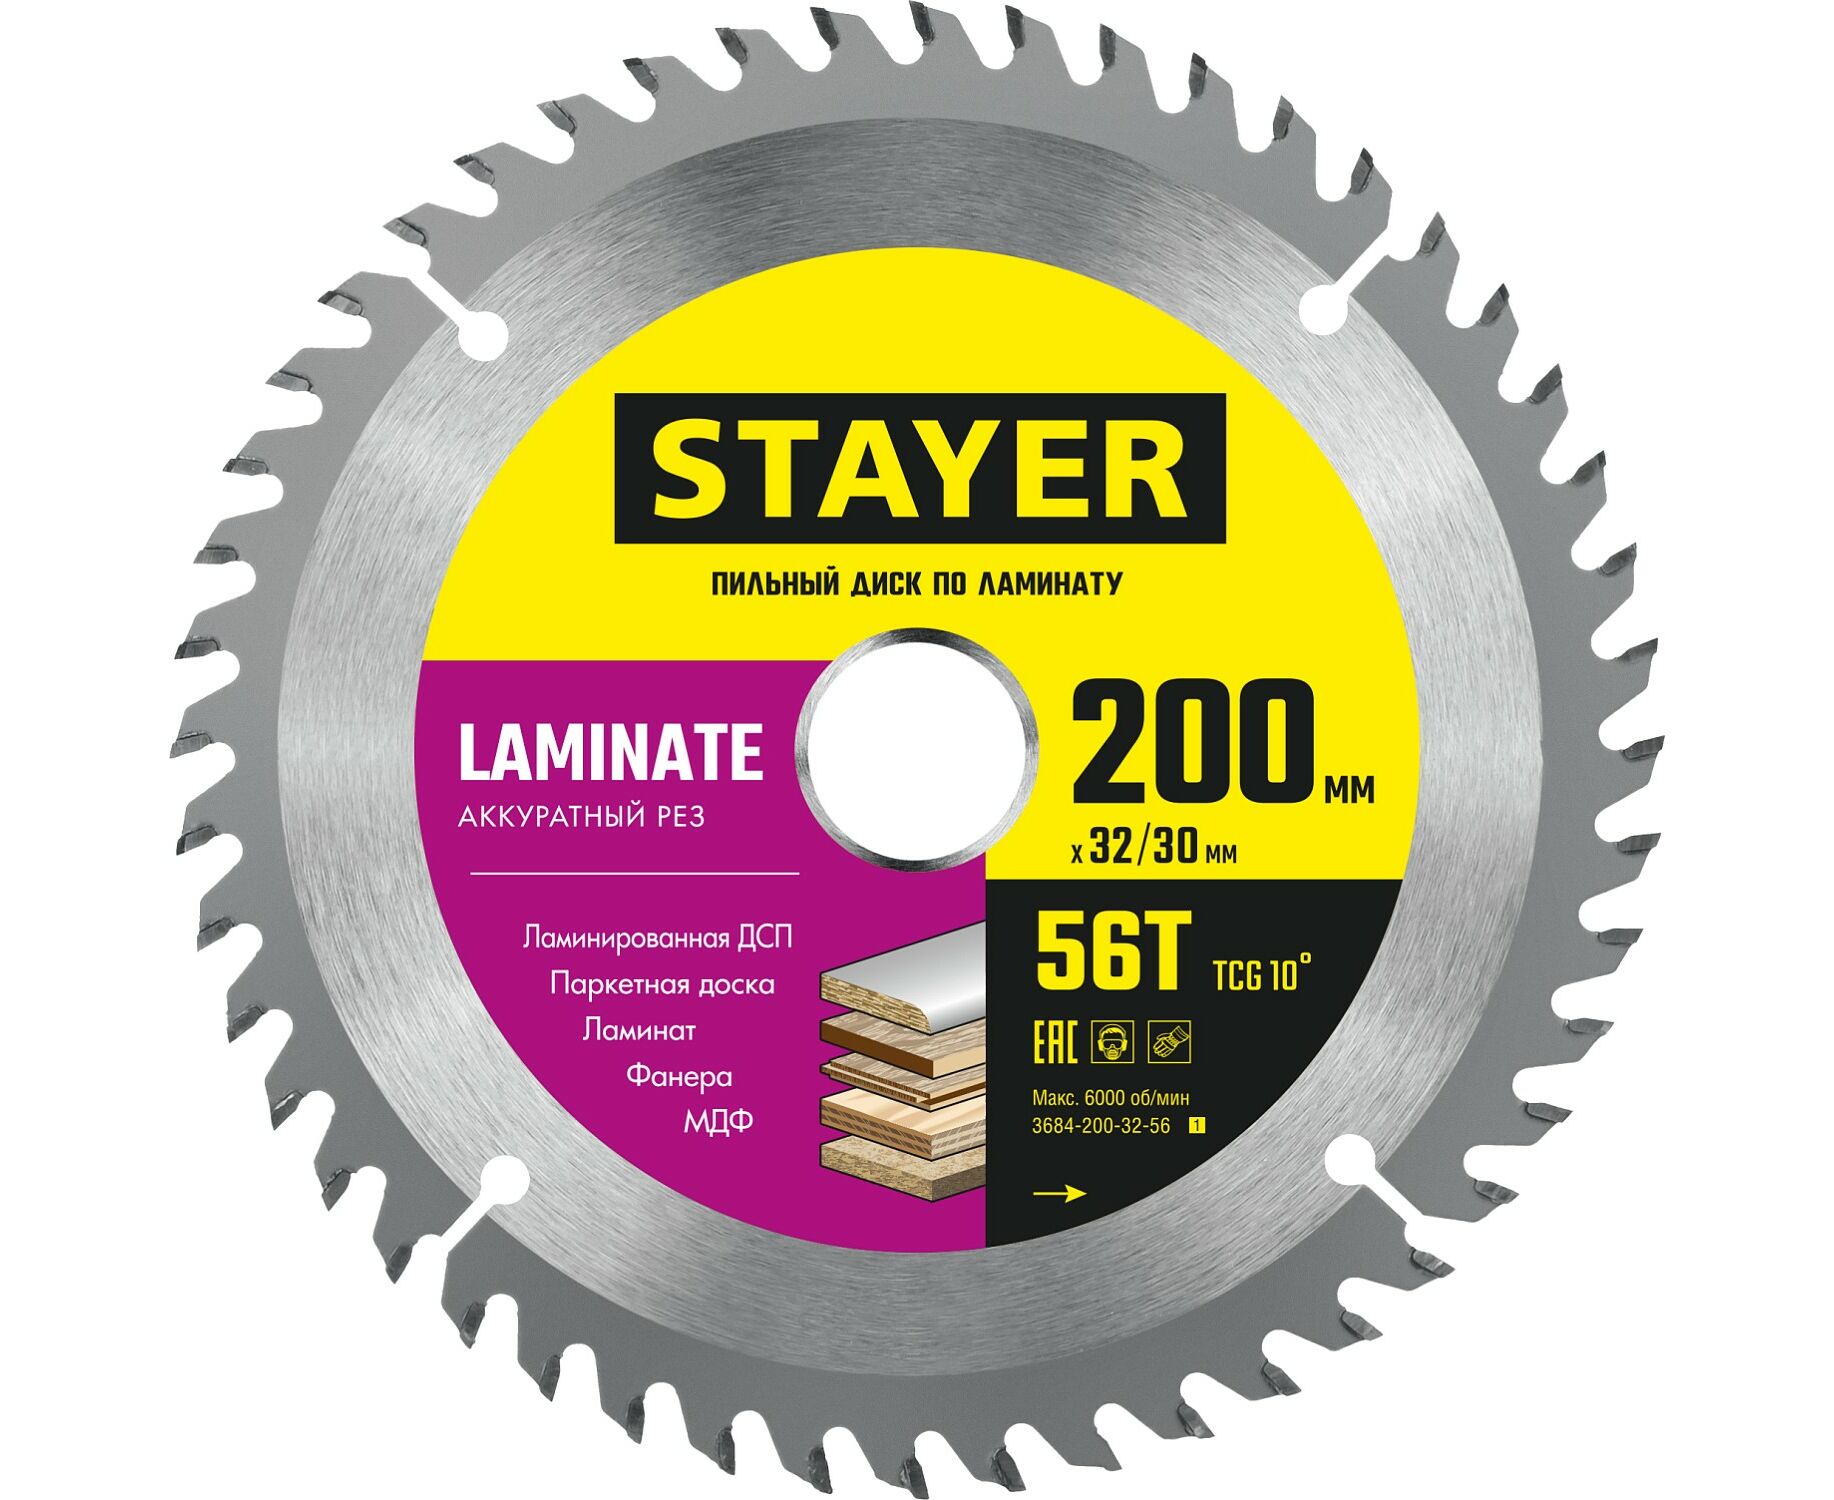 Пильный диск STAYER LAMINATE 200 x 32/30мм 56T, по ламинату, аккуратный рез пильный диск stayer laminate 210 x 32 30мм 56т по ламинату аккуратный рез